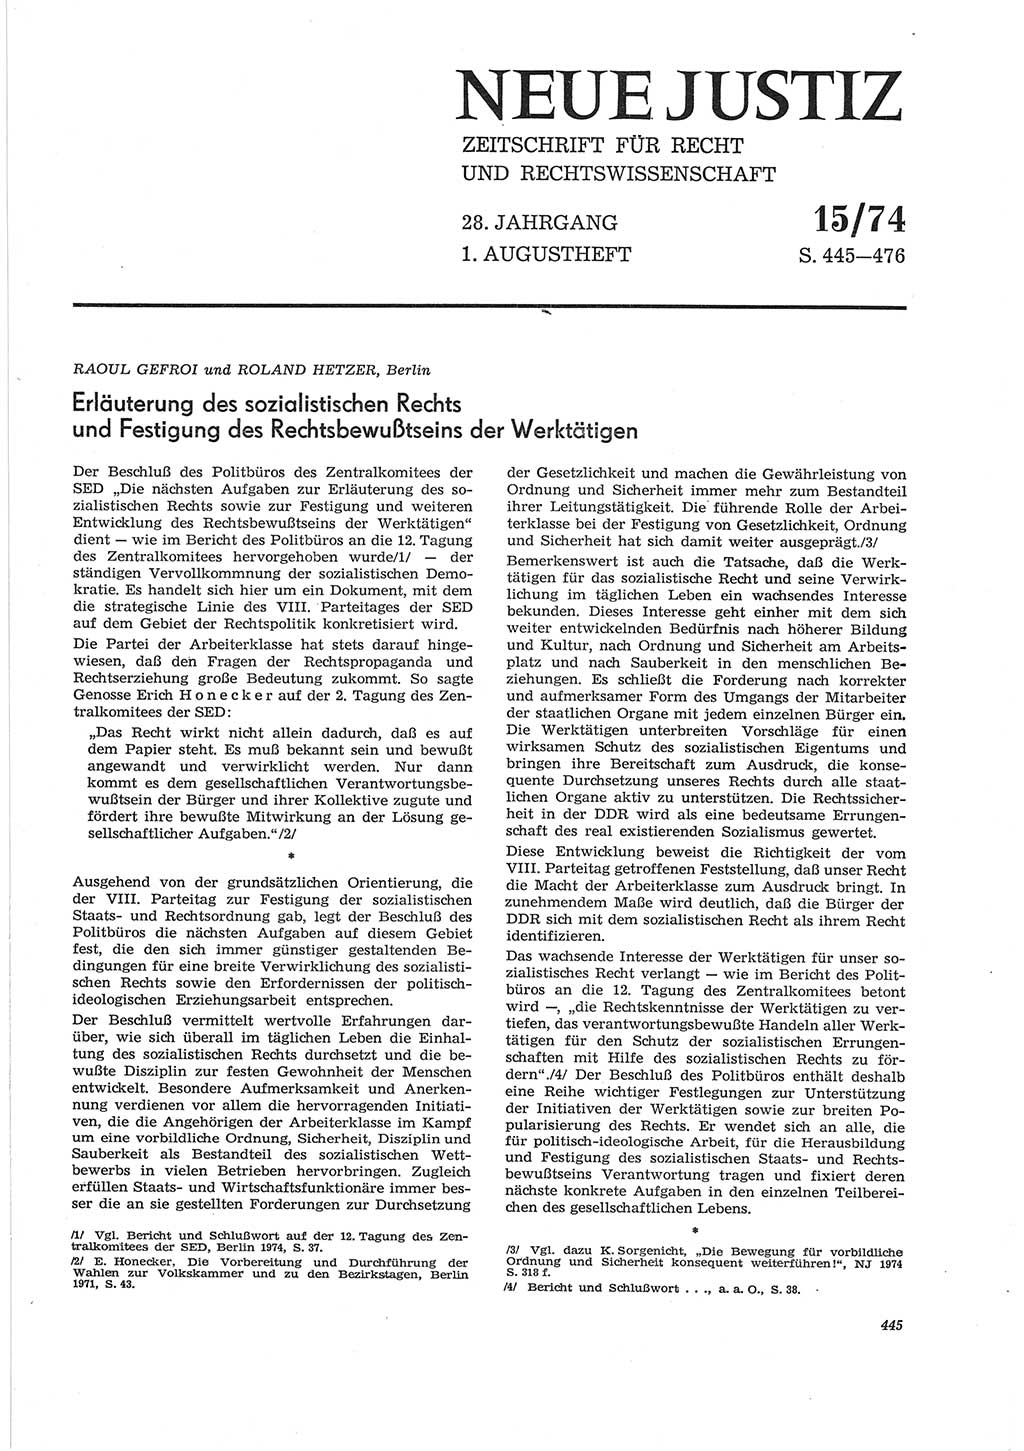 Neue Justiz (NJ), Zeitschrift für Recht und Rechtswissenschaft [Deutsche Demokratische Republik (DDR)], 28. Jahrgang 1974, Seite 445 (NJ DDR 1974, S. 445)